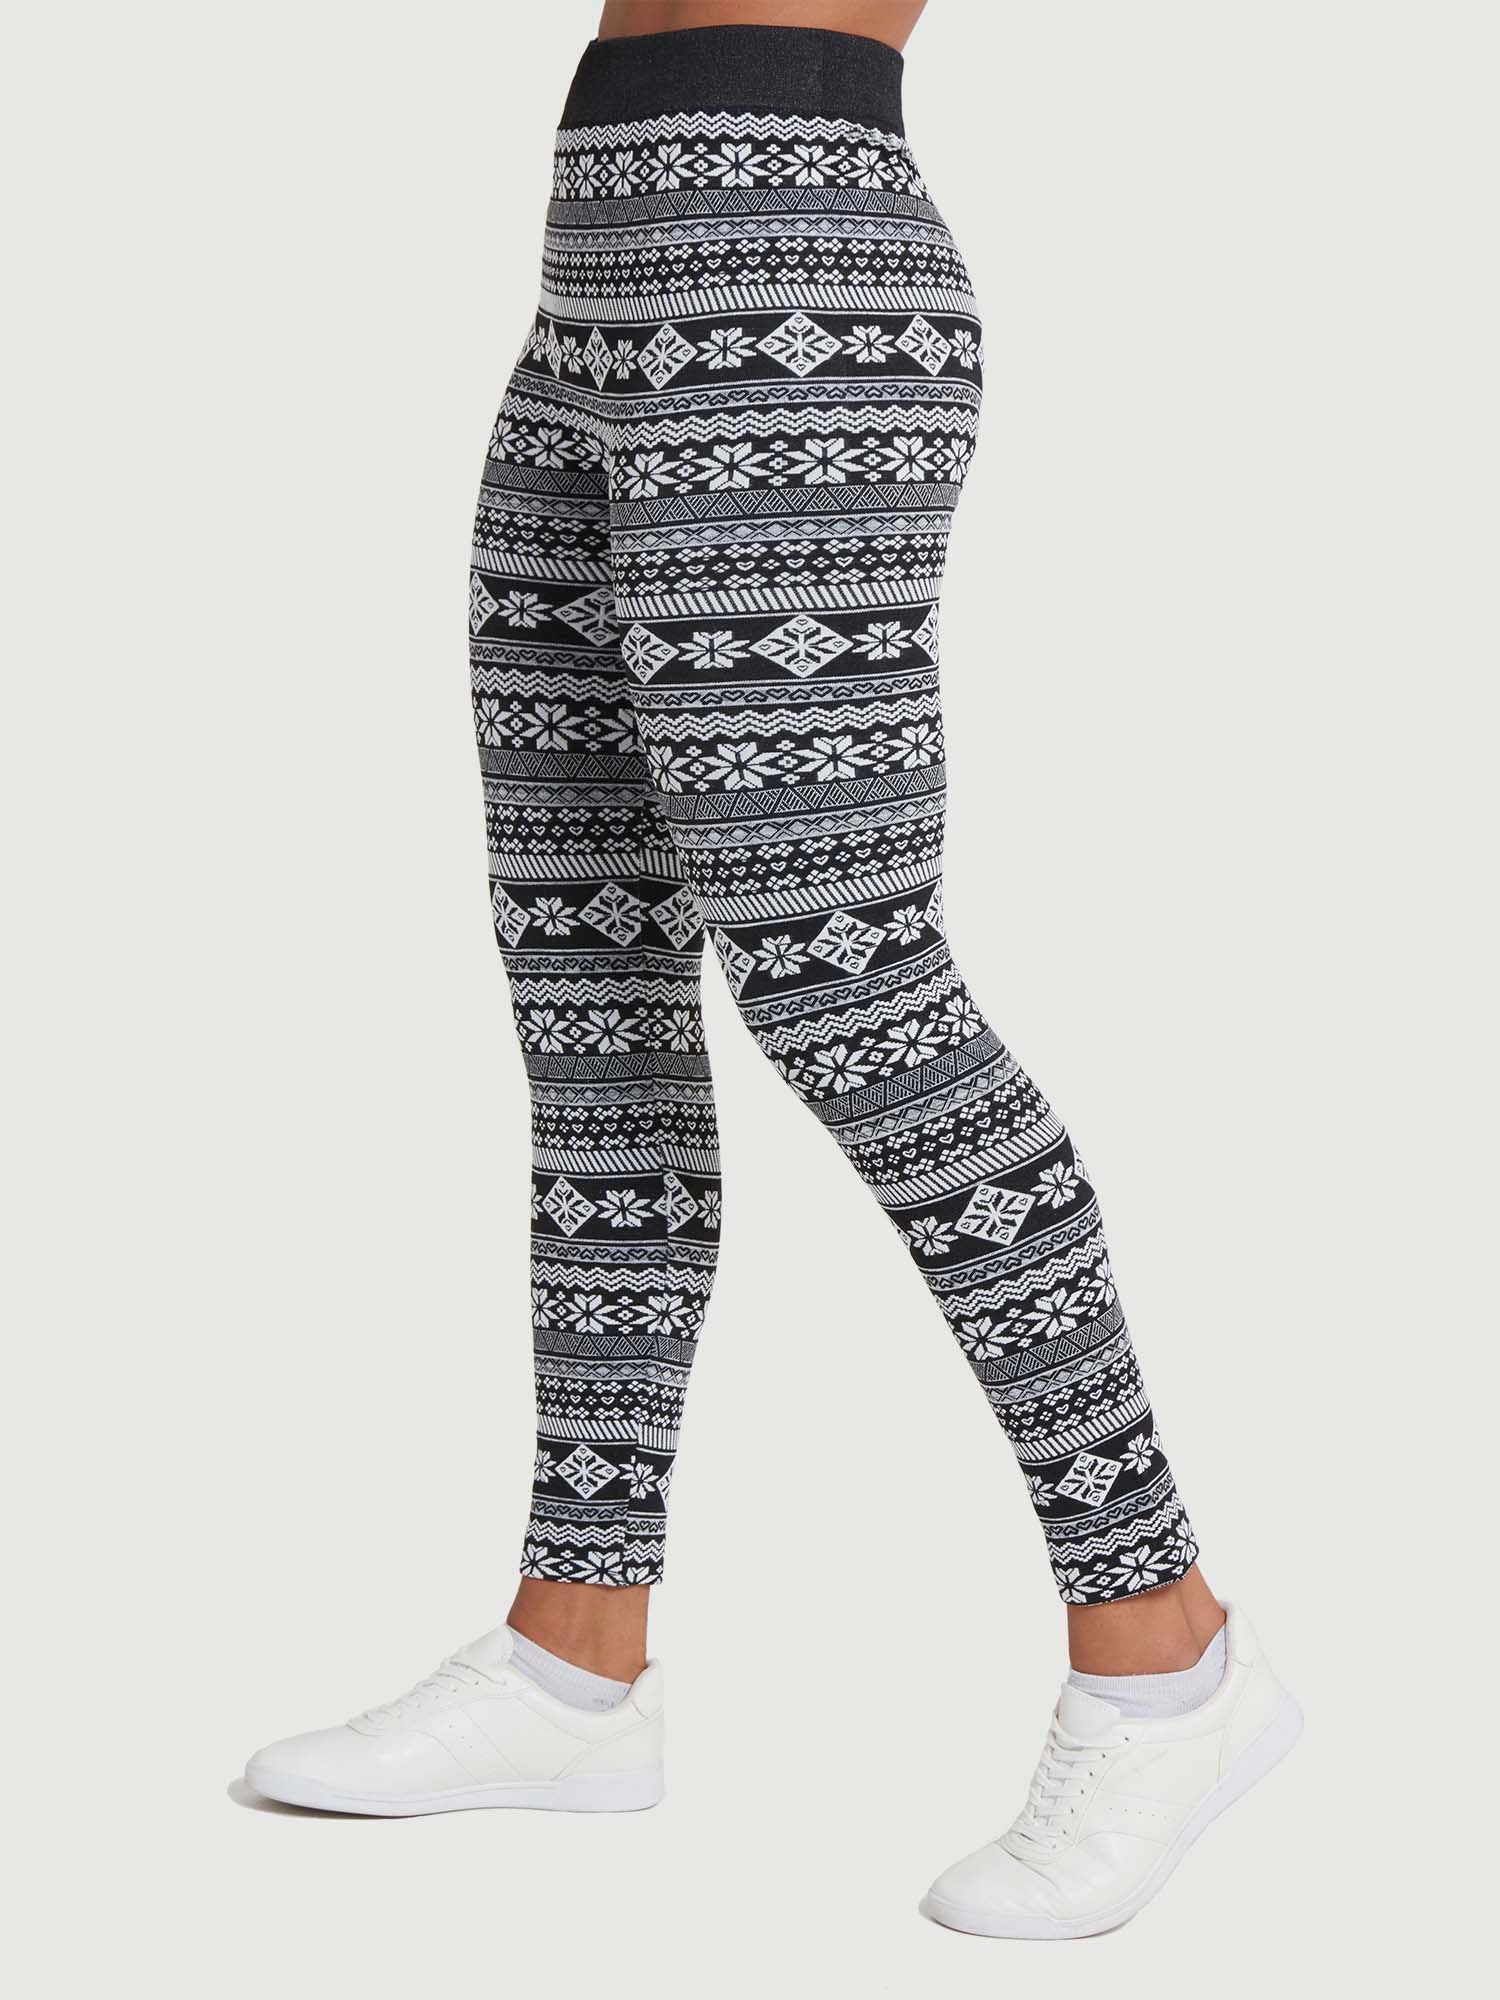 Women's Fleece Lined Printed Leggings (3-Pack) - DailySteals